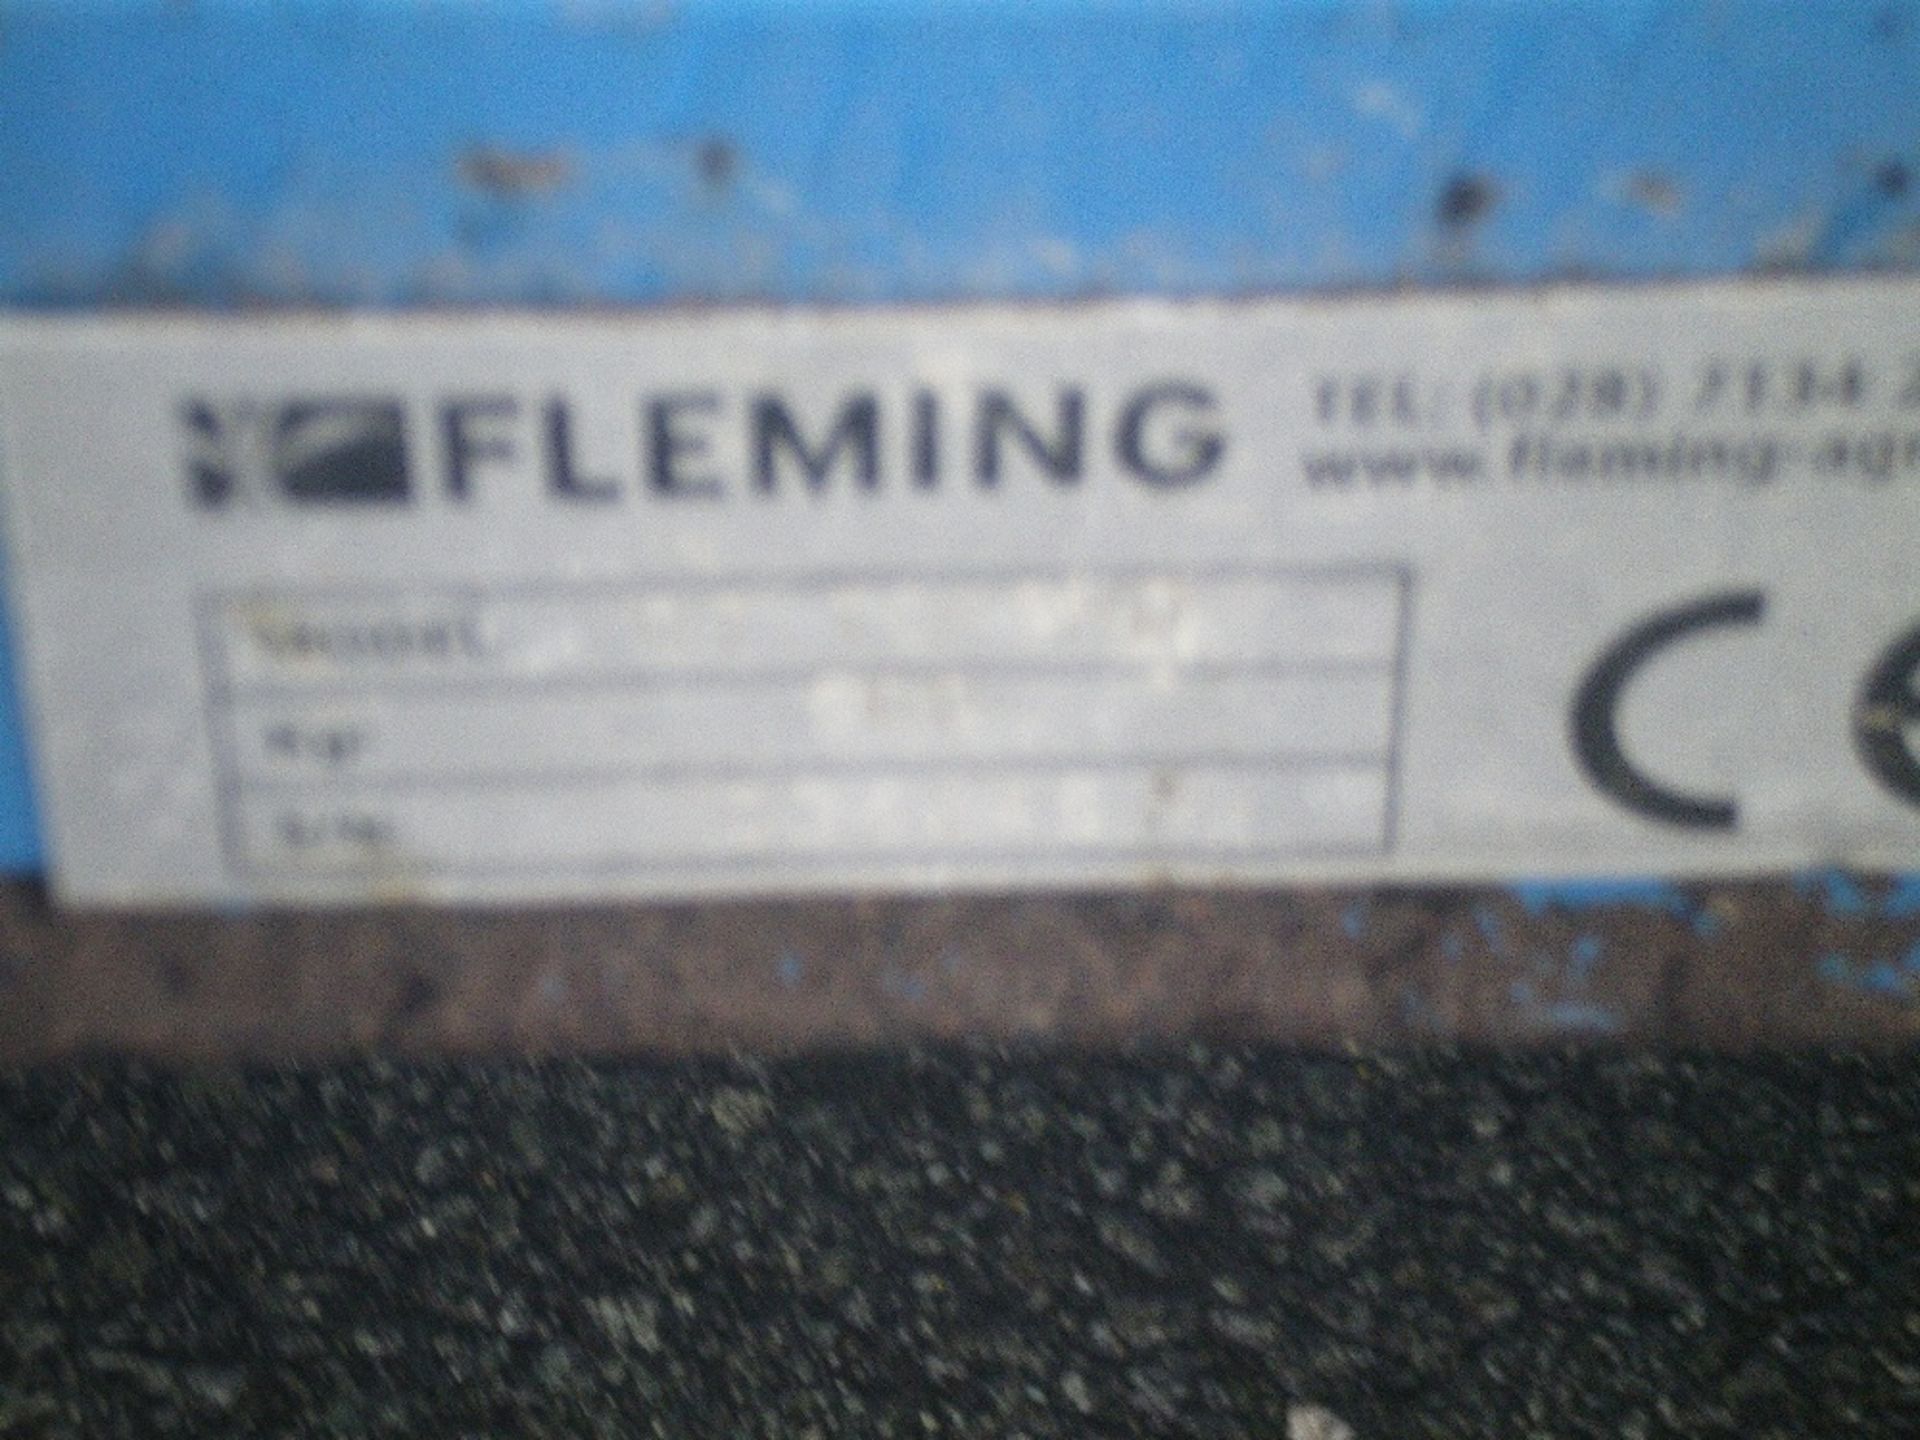 FLEMMNG 900 TOPPER - Image 4 of 4